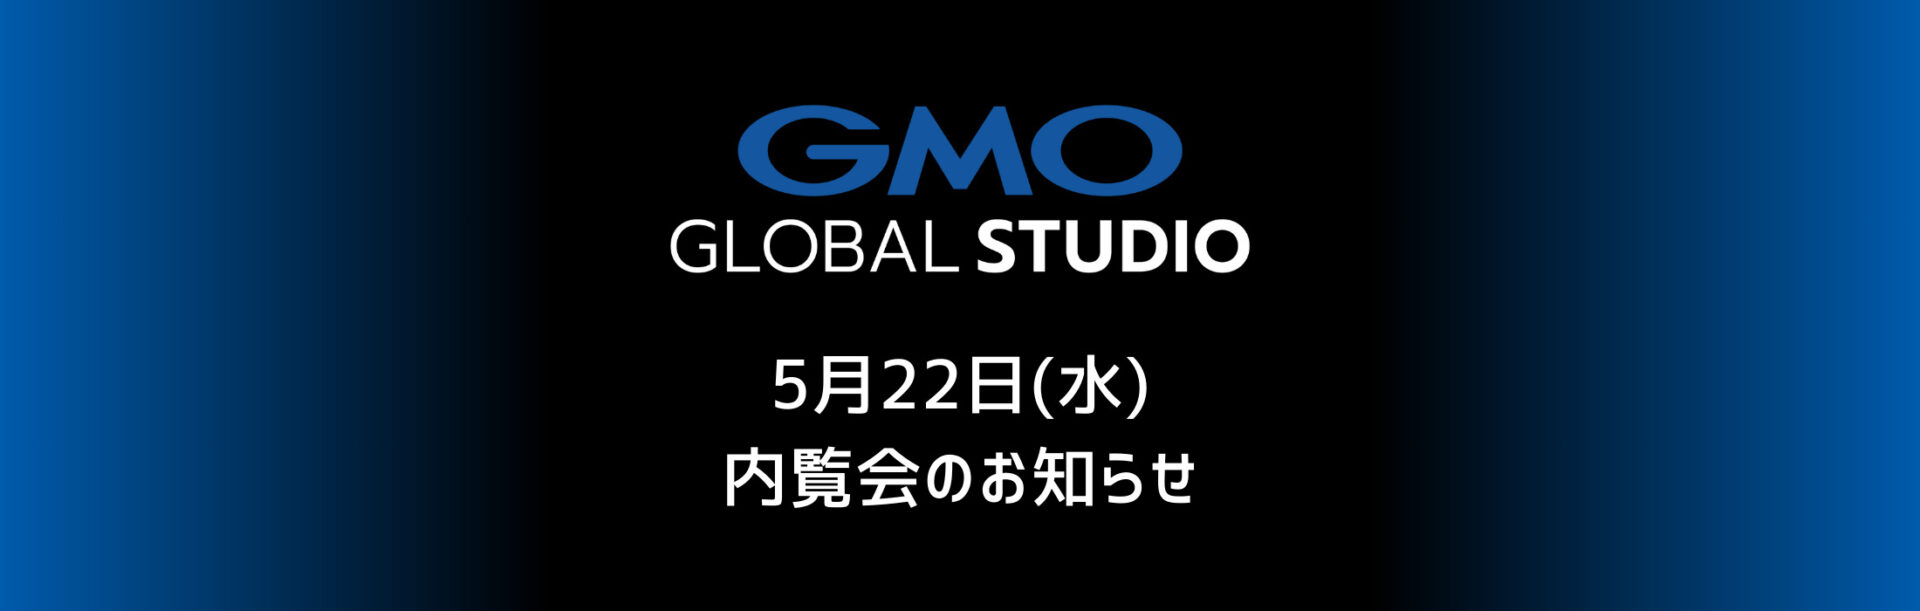 GMOグローバルスタジオ 内覧会 5月22日(水)